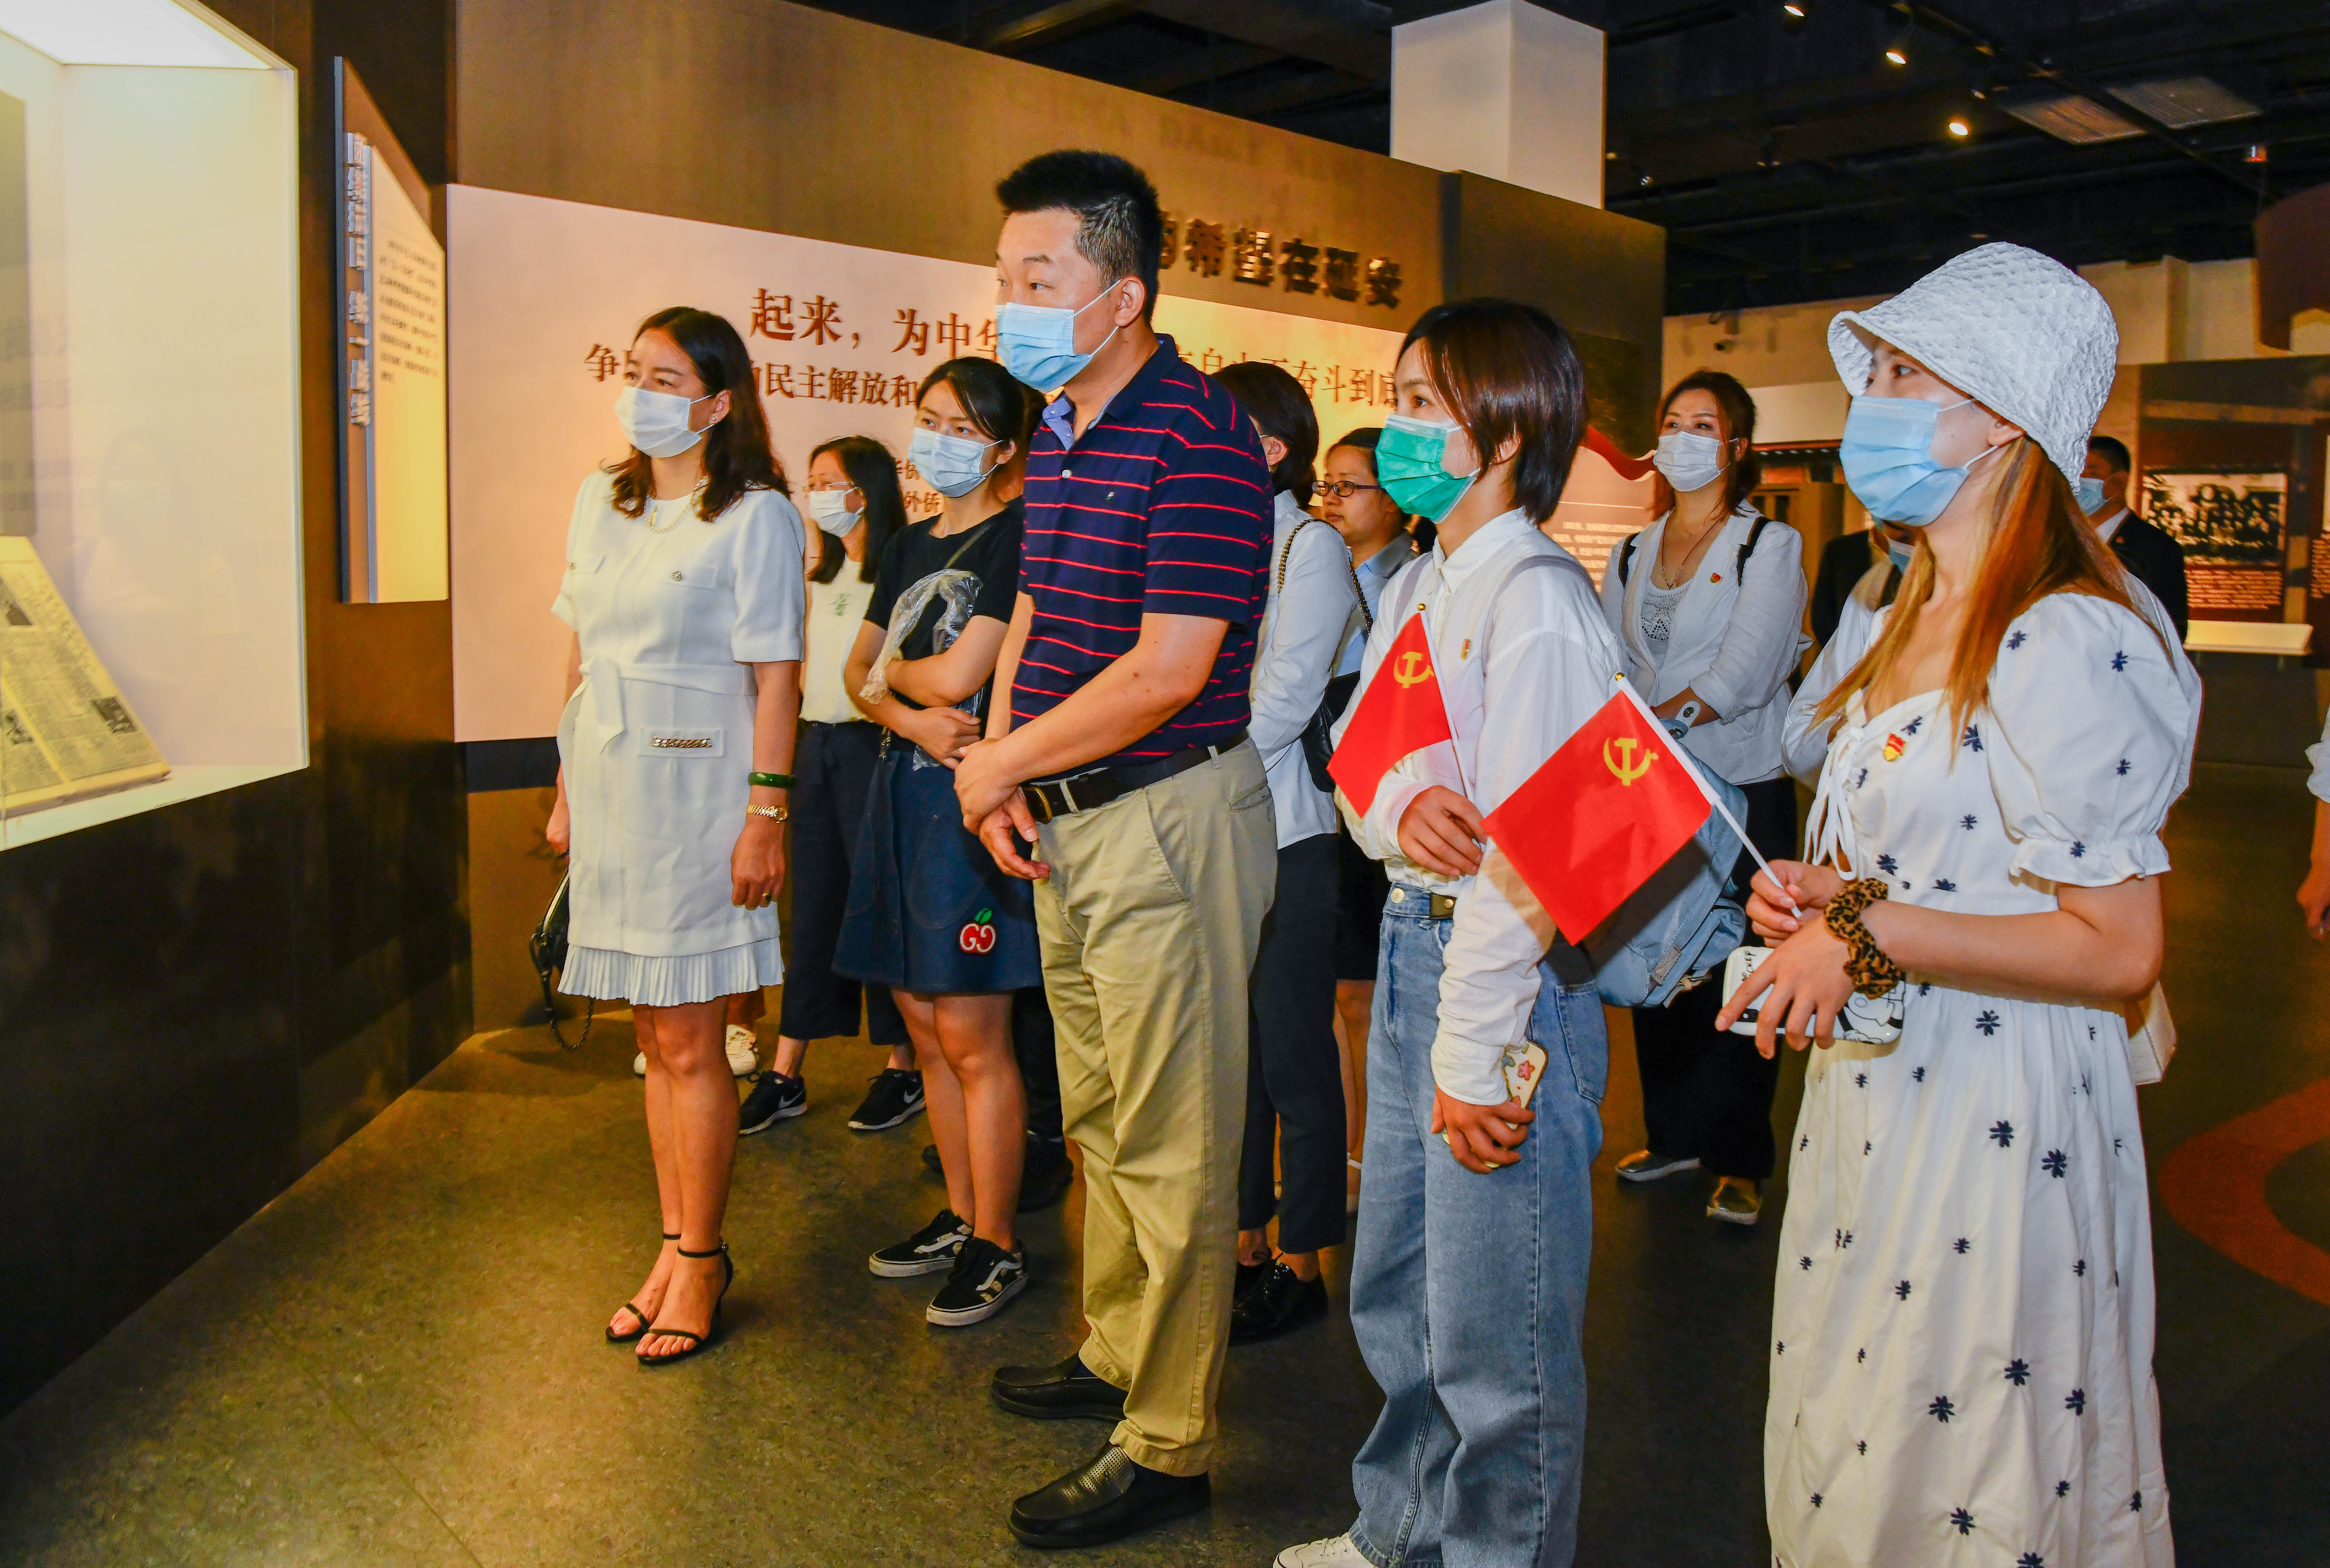 永远跟党走，参观「百年航程 · 赤子侨心——庆祝中国共产党成立 100 周年主题展」